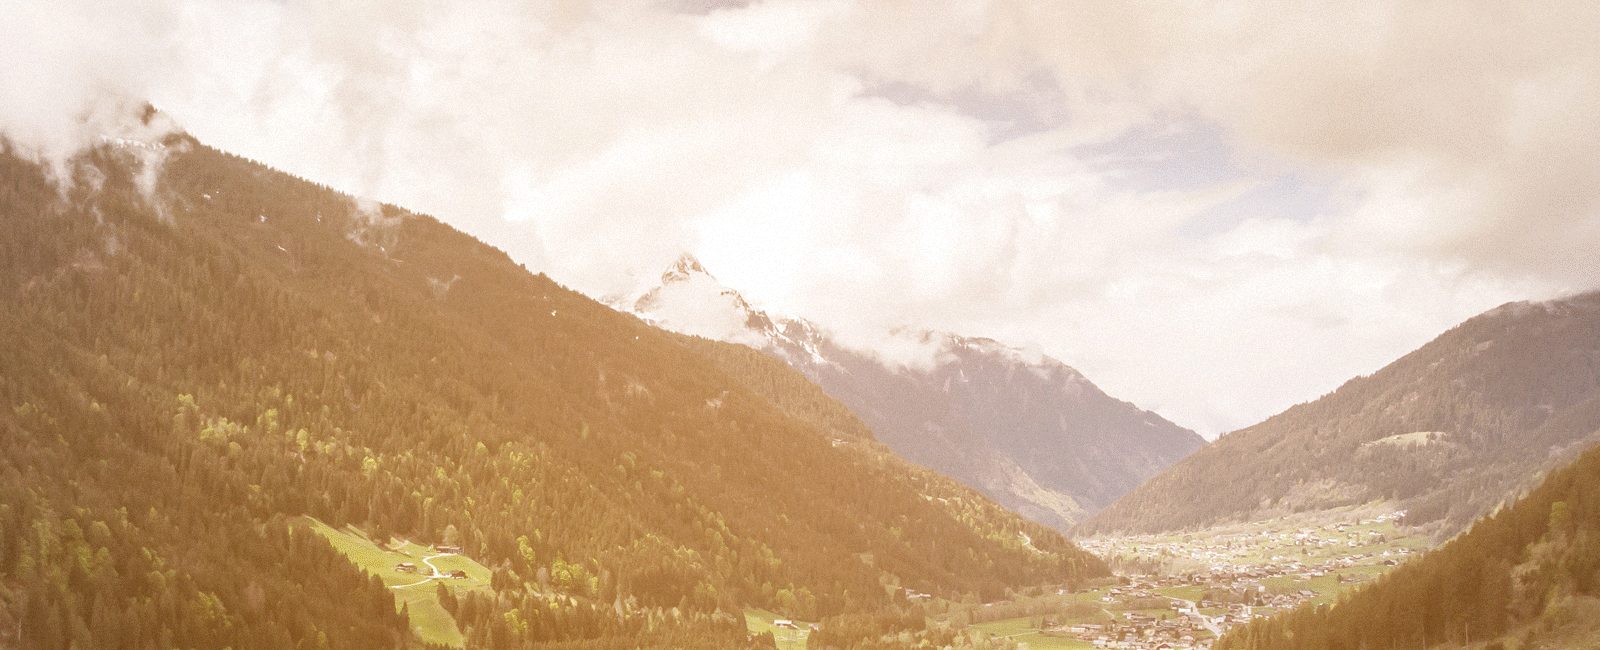 Fotografie für das Alpenchalet Gaschurn